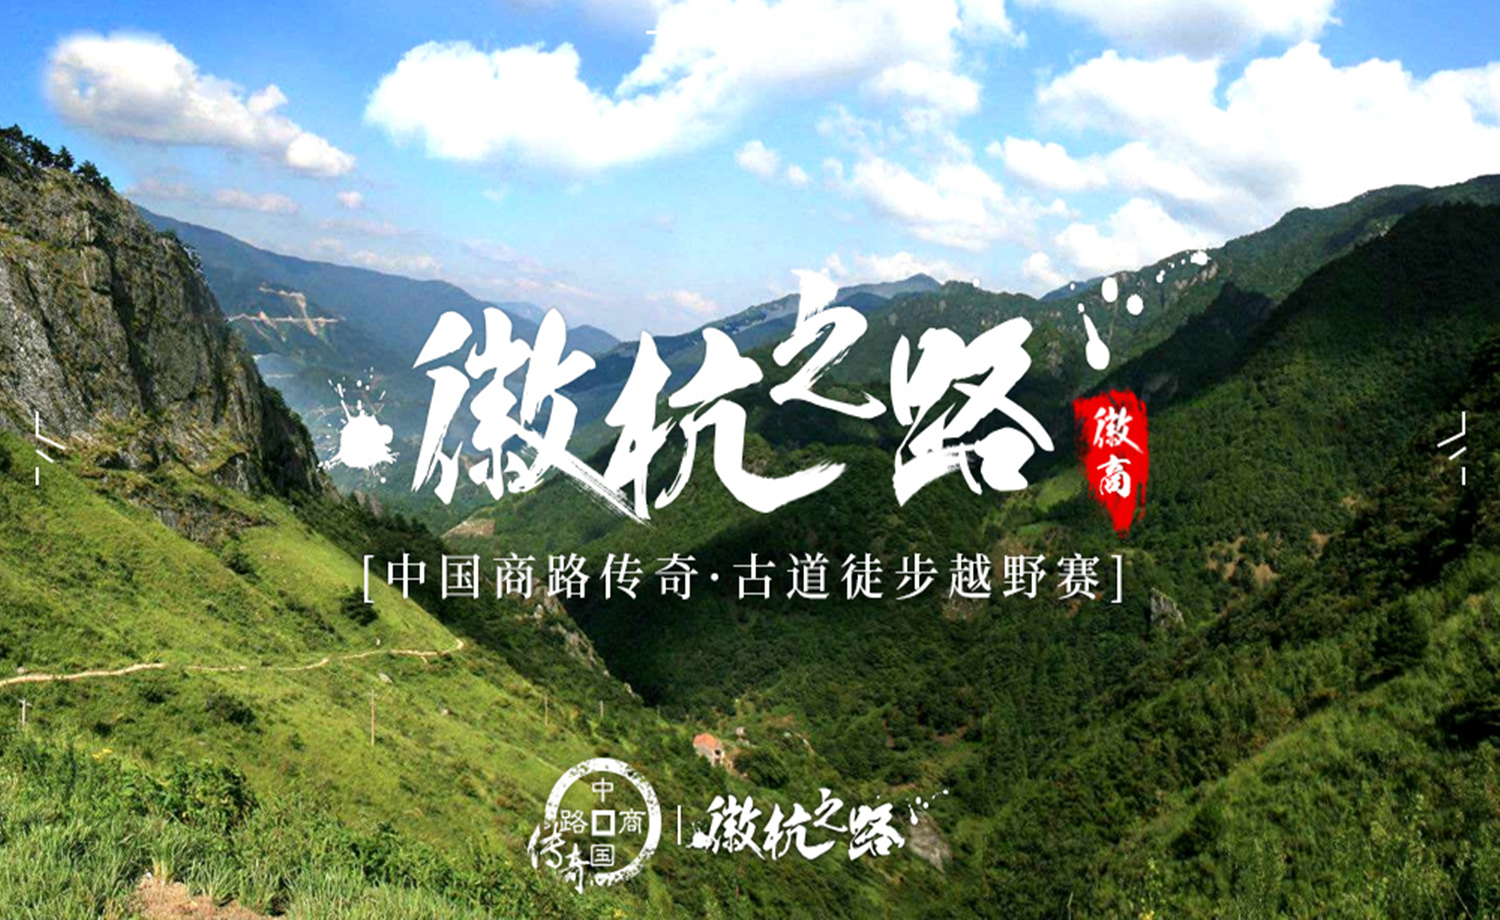 中国商路传奇·徽杭古道21km徒步越野